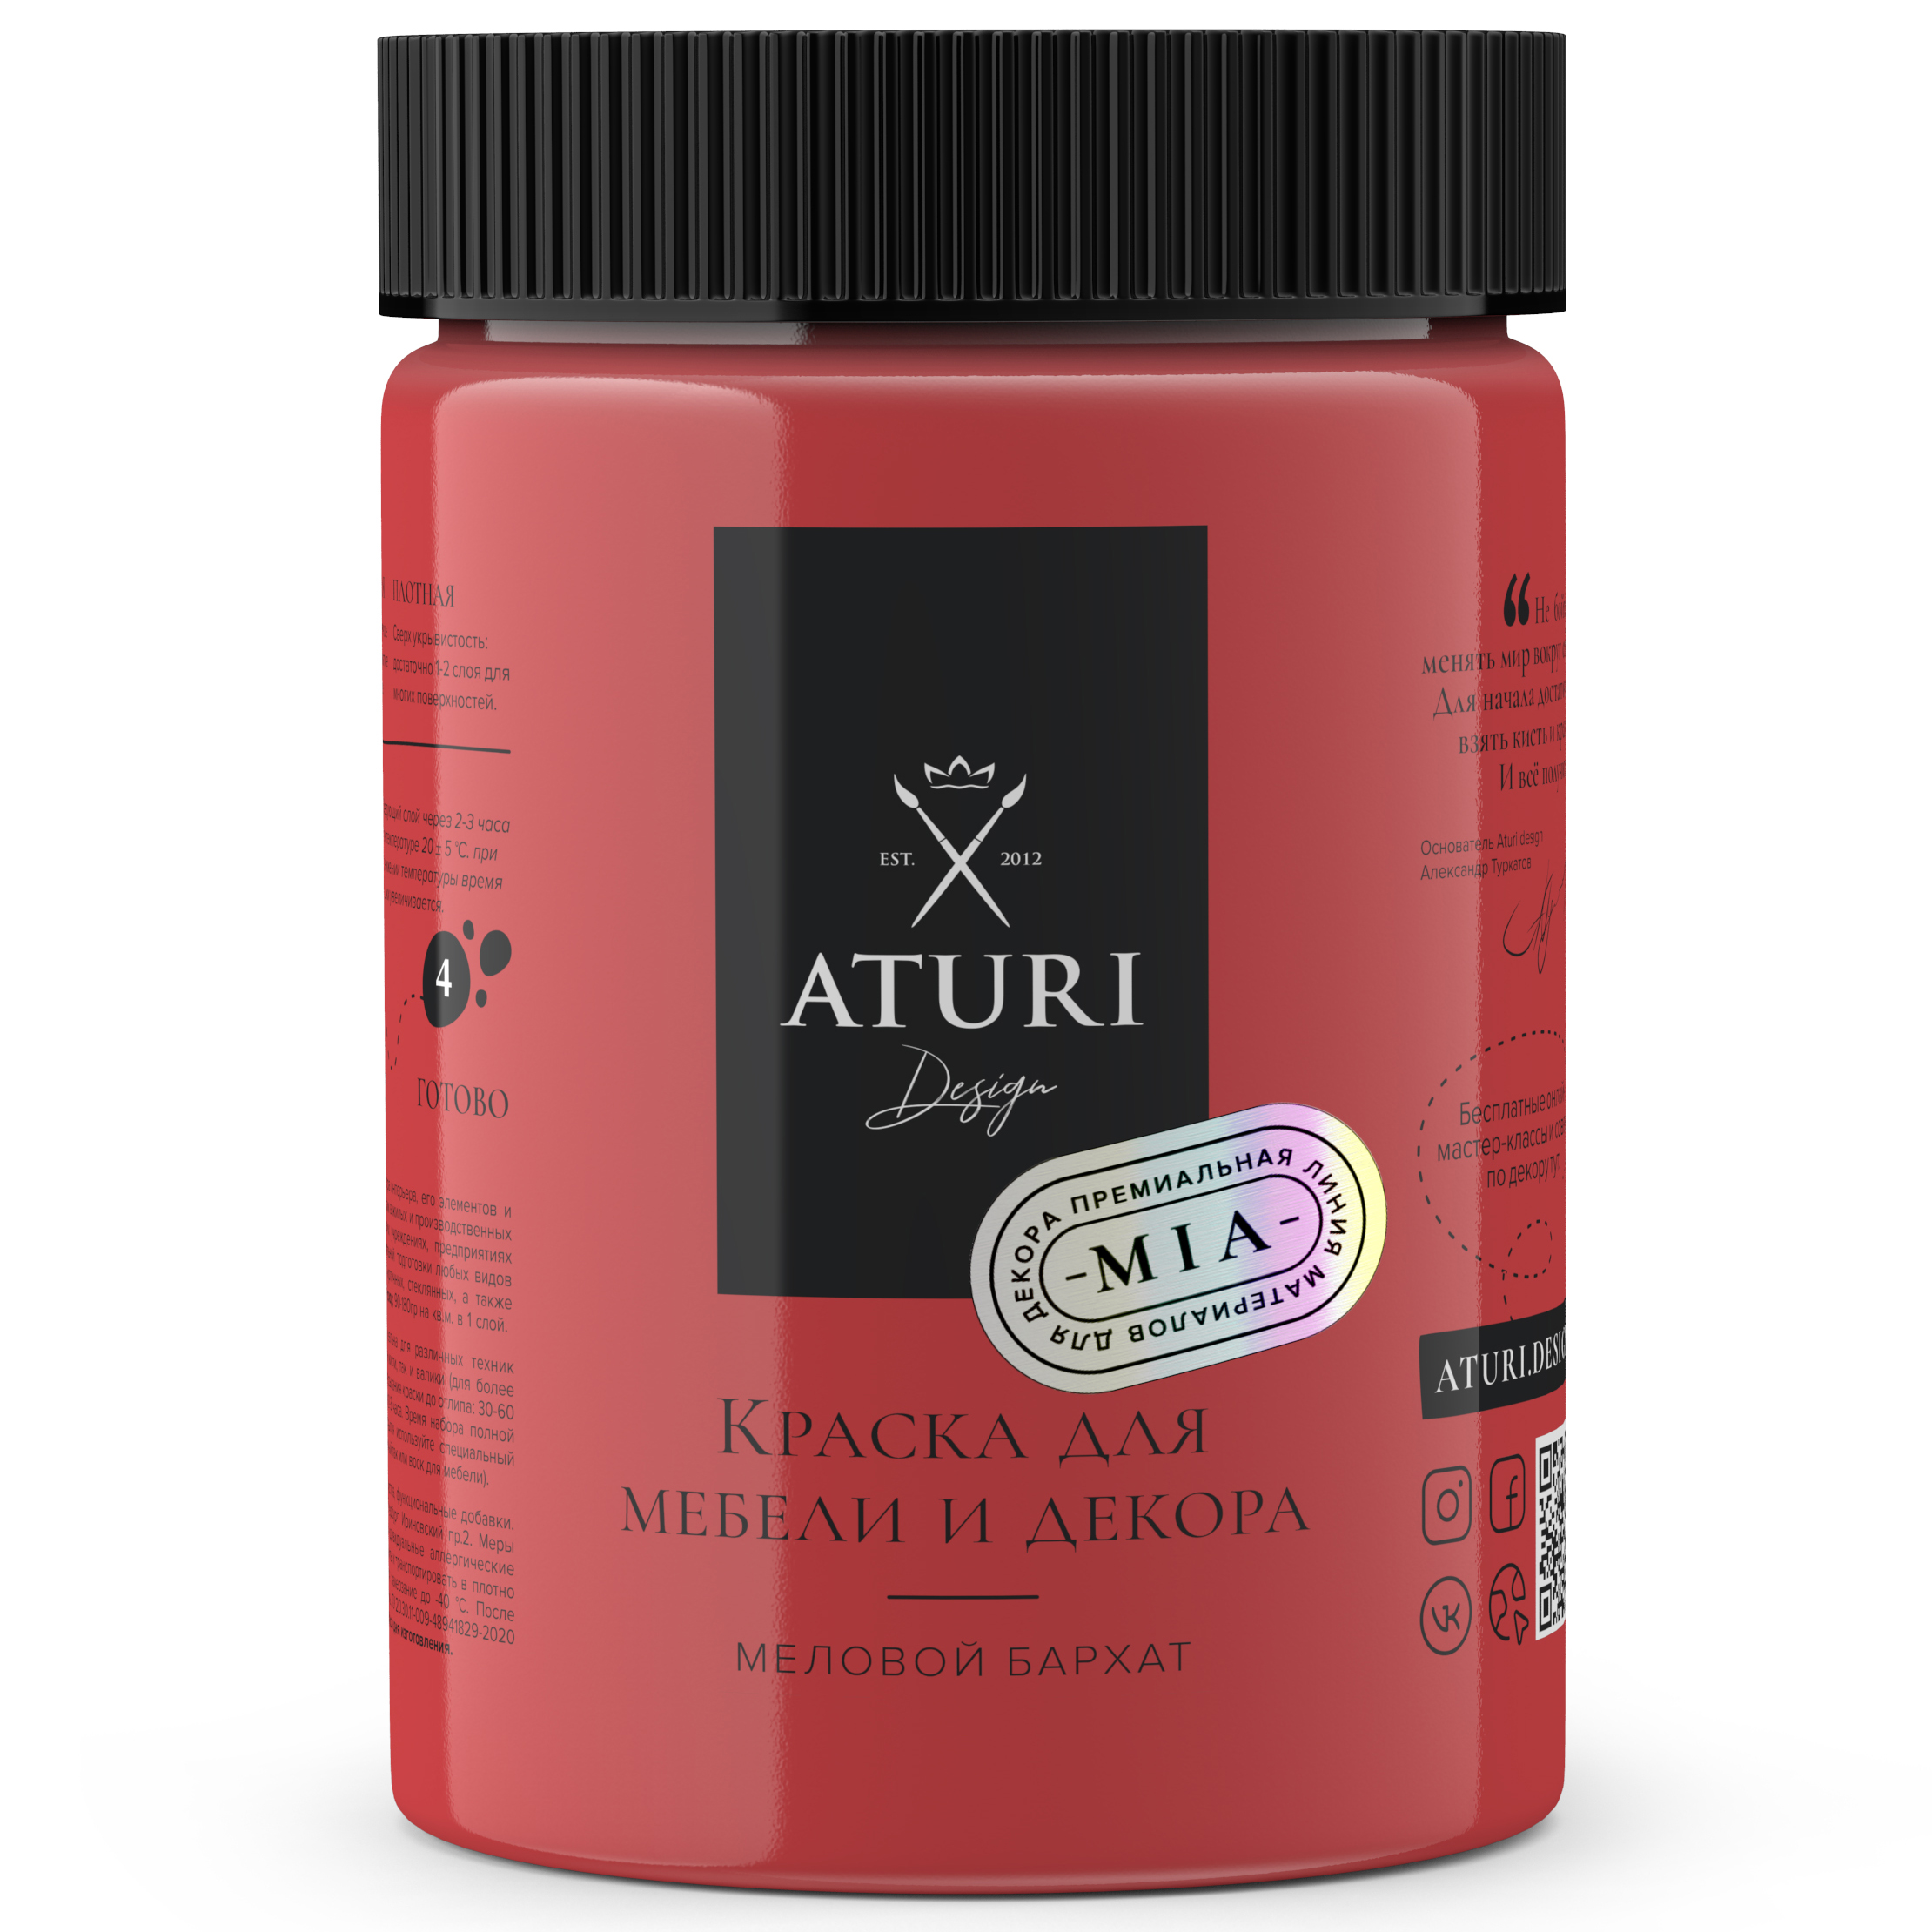 Краска Aturi Design Mia для мебели и декора, меловой бархат; Цвет: Красная помада, 830гр губная помада luxvisage тон 02